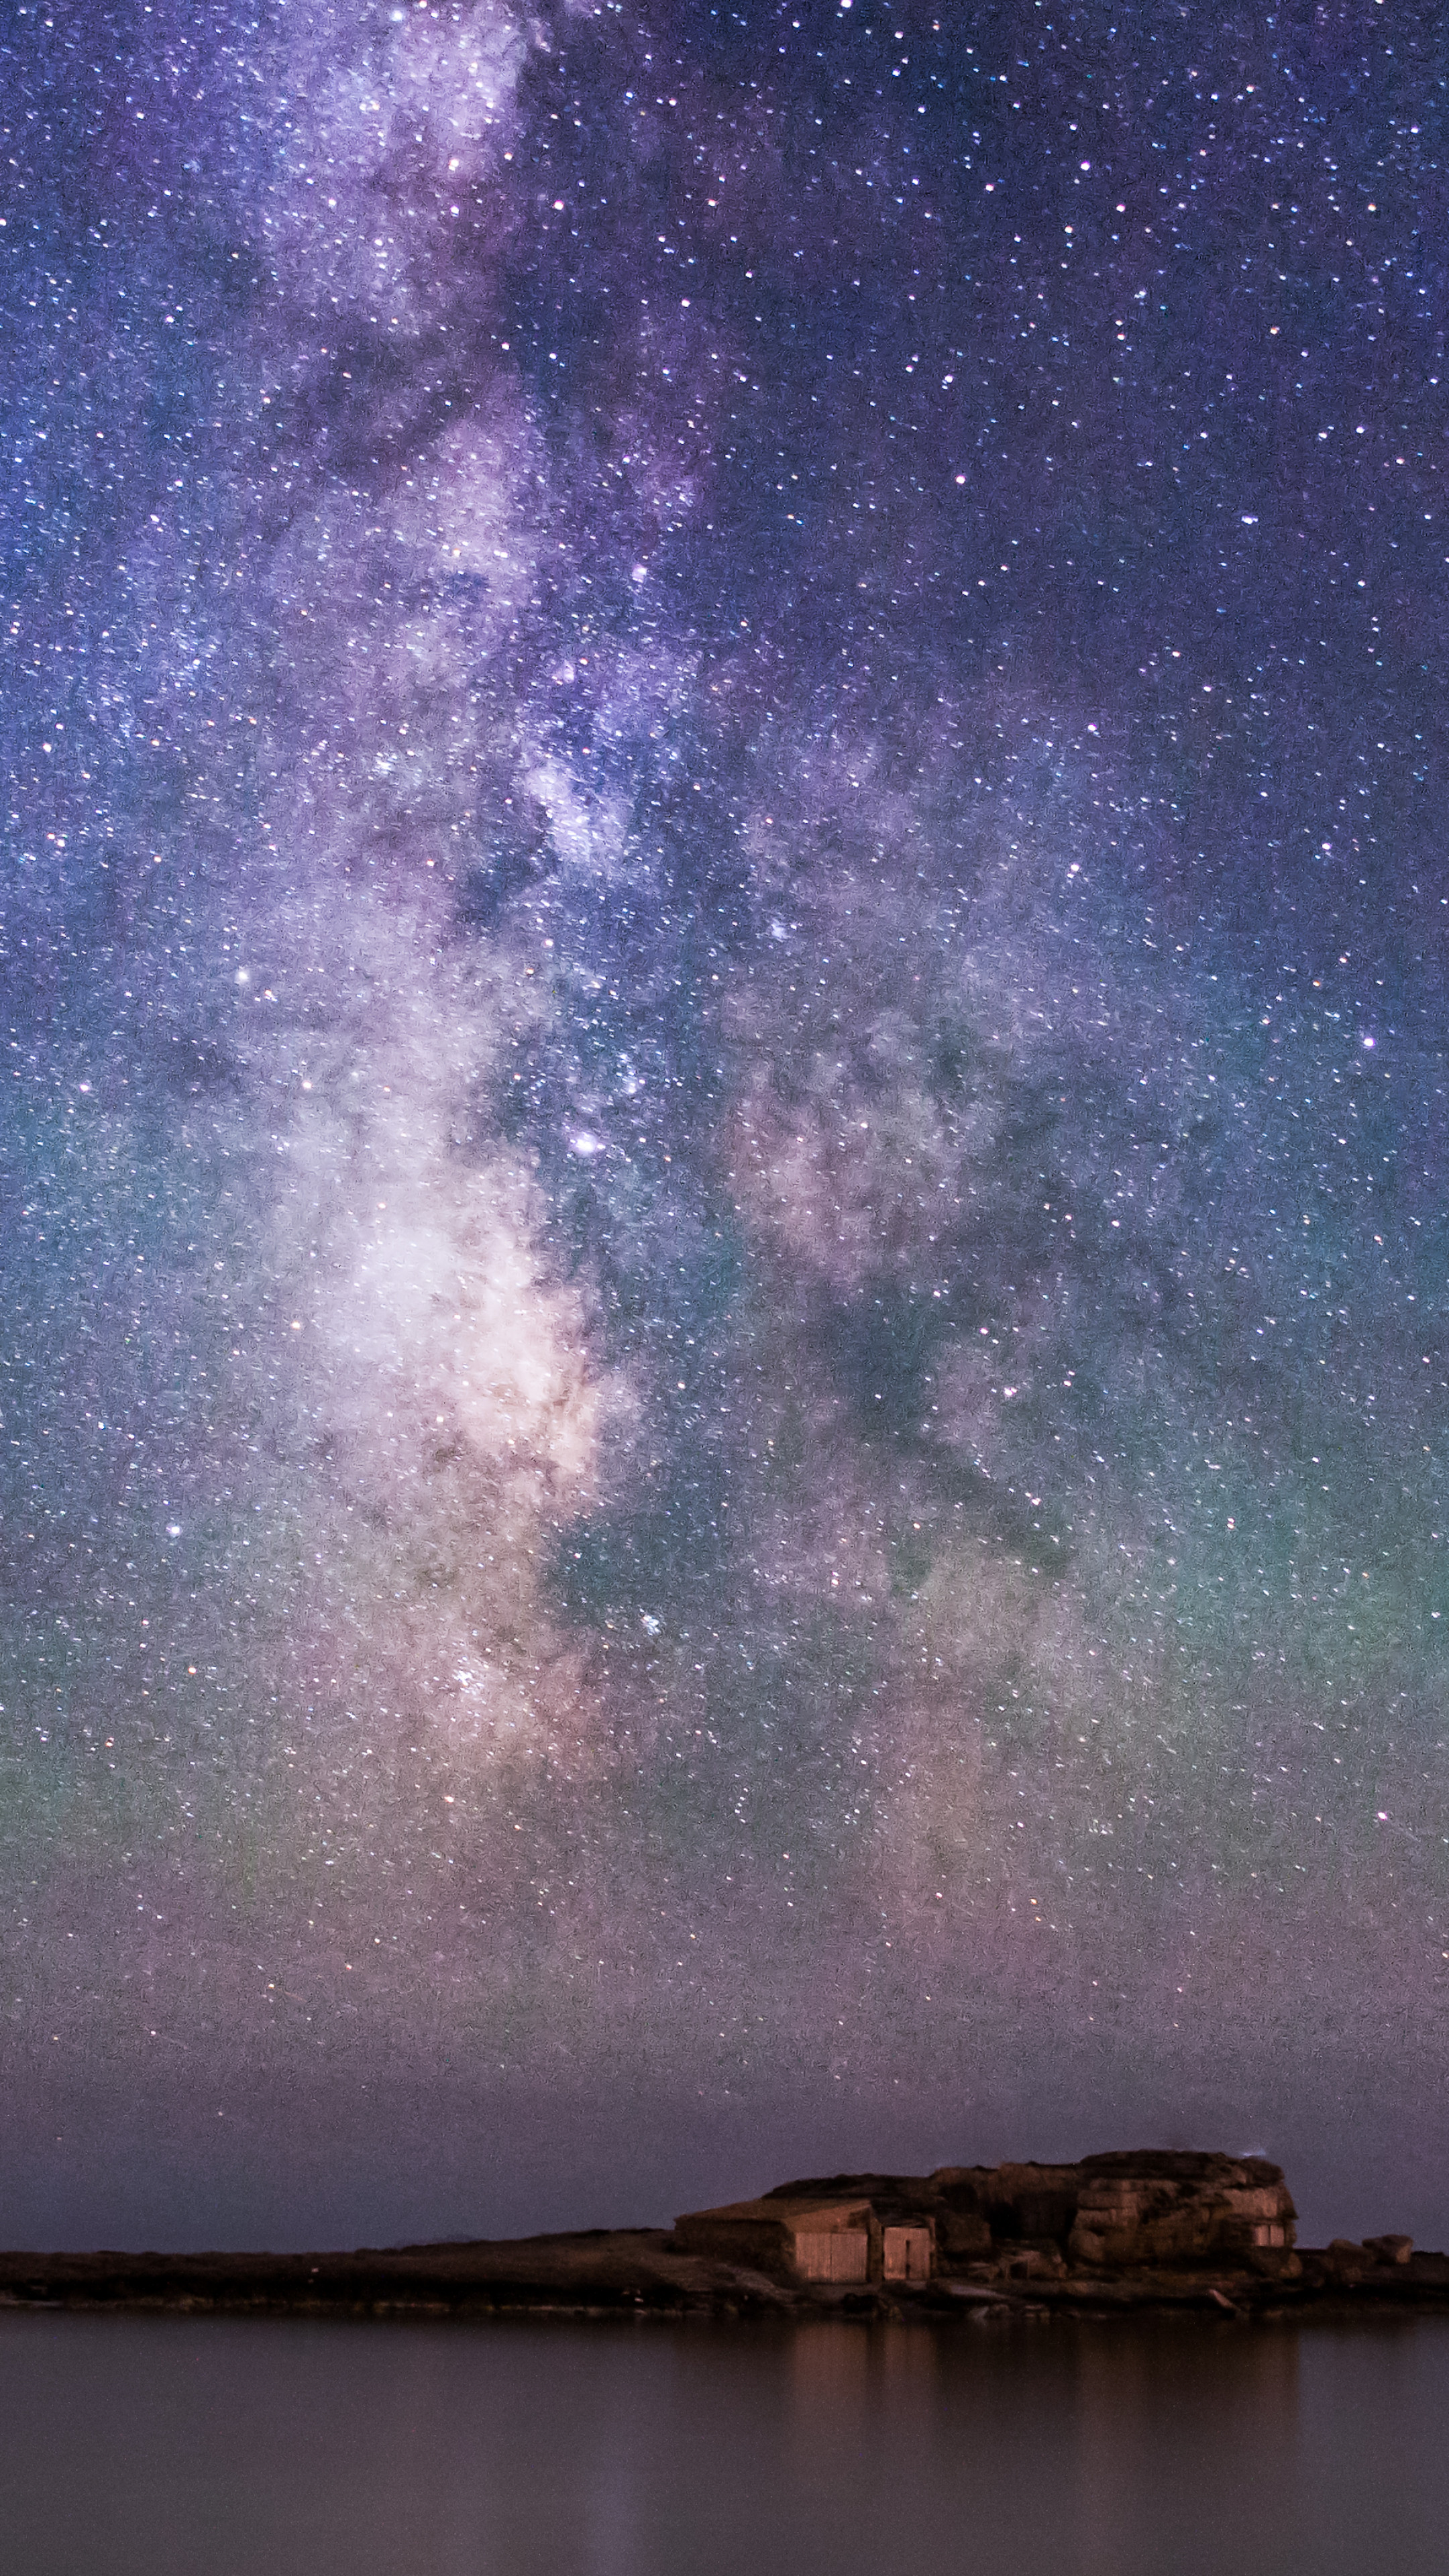 Bầu trời đêm: Cùng chiêm ngưỡng vẻ đẹp của bầu trời đêm với hàng ngàn ngôi sao lấp lánh trên nền đêm tối. Những hình ảnh này sẽ khiến bạn cảm thấy như đang được đắm mình trong một không gian thật khác biệt.